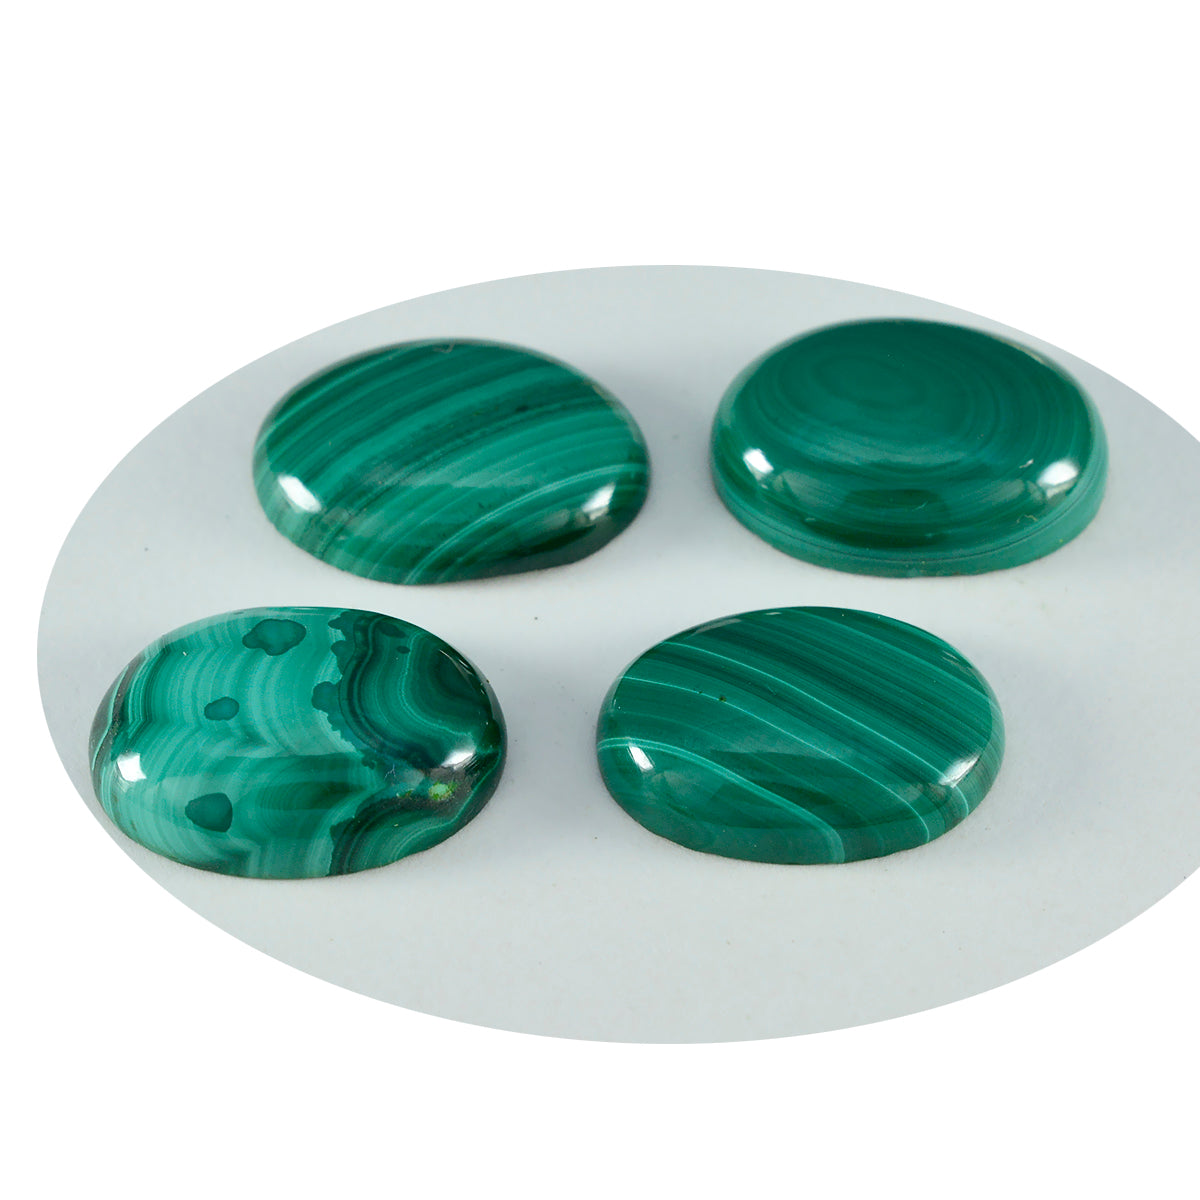 riyogems 1 pieza cabujón de malaquita verde 10x12 mm forma ovalada una piedra suelta de calidad